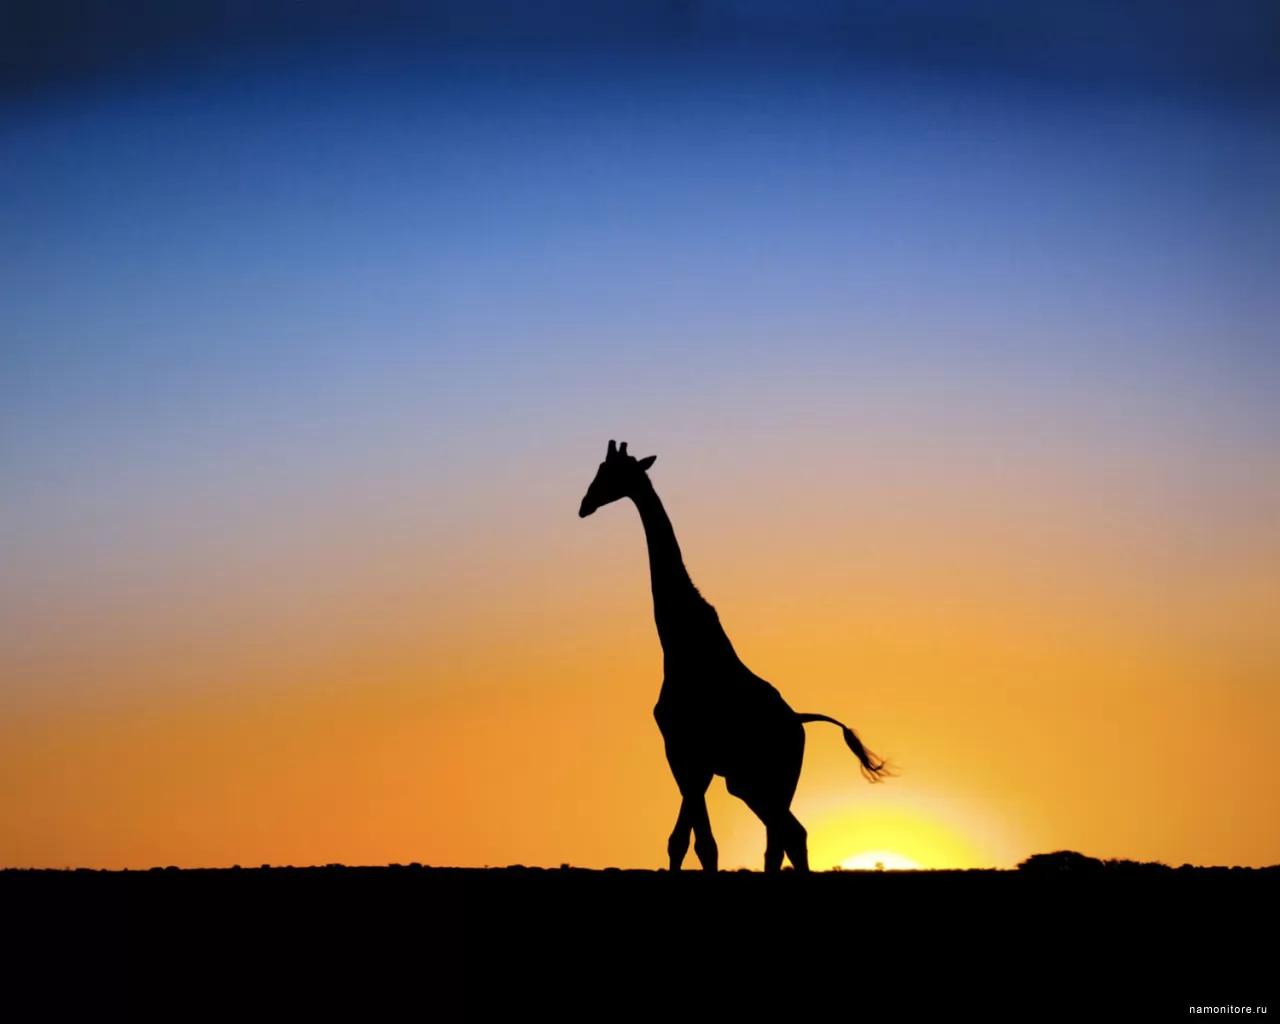 Giraffe against a sunset, Africa, animals, best, giraffes, sunsets x